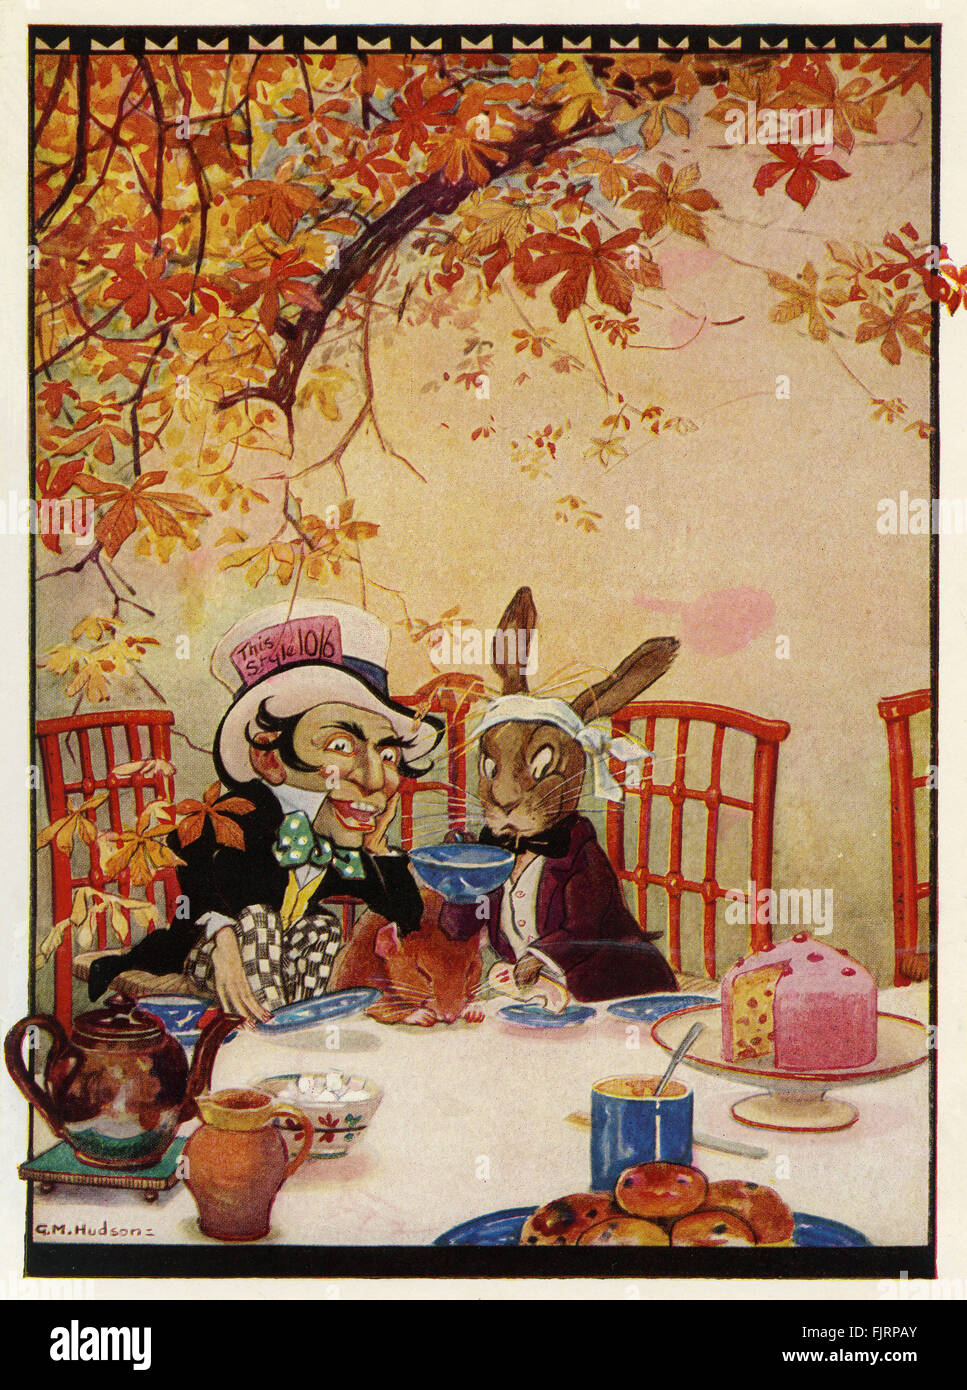 Alice's Adventures in Wonderland de Lewis Carroll. Illustré par Gwynedd M Huson (dates non connues). Capion lit:Le Lièvre de mars et le Chapelier étaient le thé (chapitre 7). LC - mathématicien britannique et l'auteur - de son vrai nom Charles Lutwidge Dodgson : 27 janvier 1832 - 14 janvier 1898 Banque D'Images